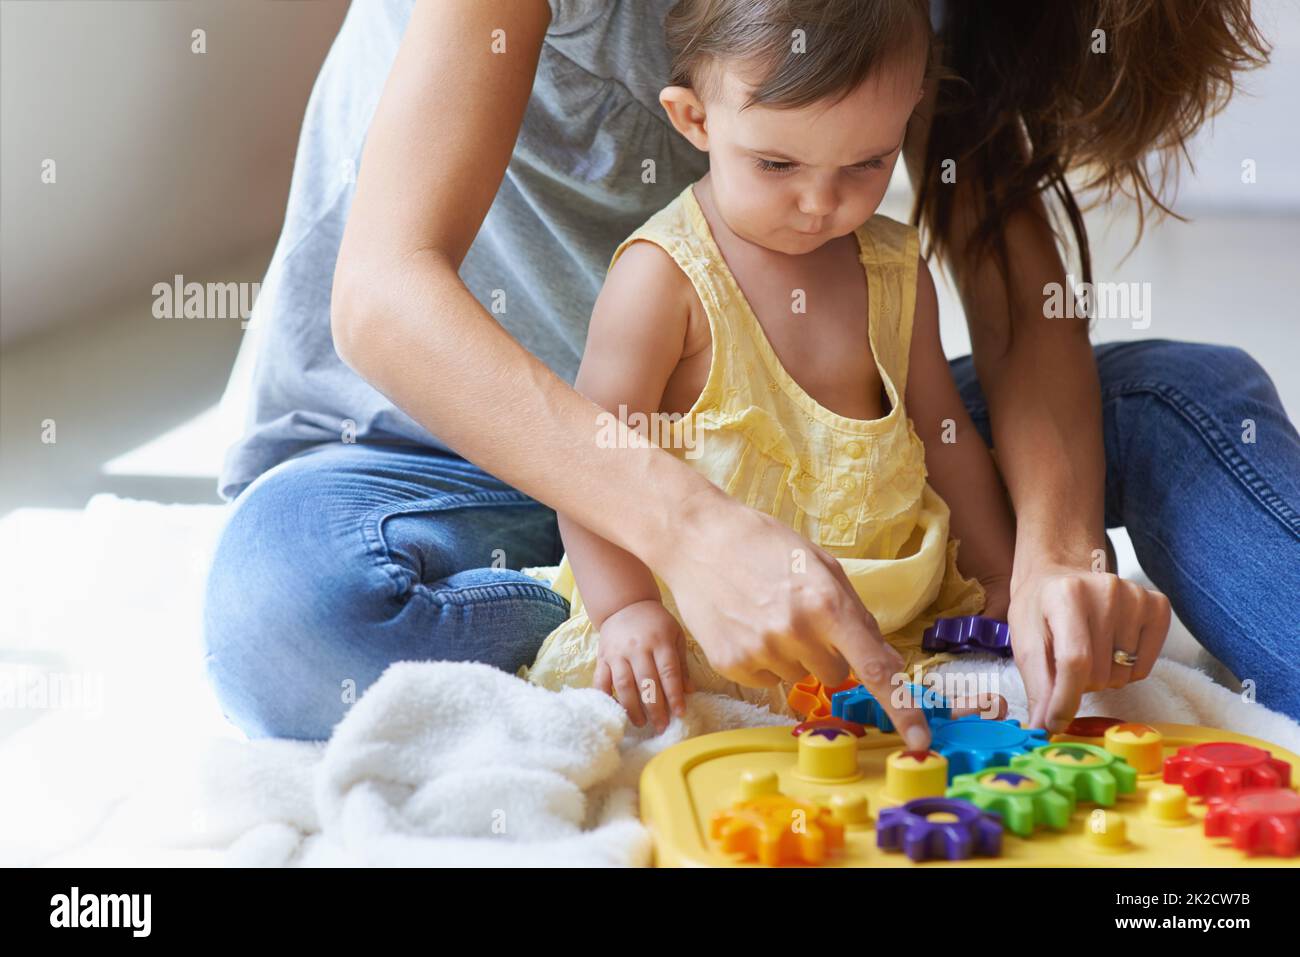 Los bebés de 9 meses, la madre, jugar, juguetes de madera